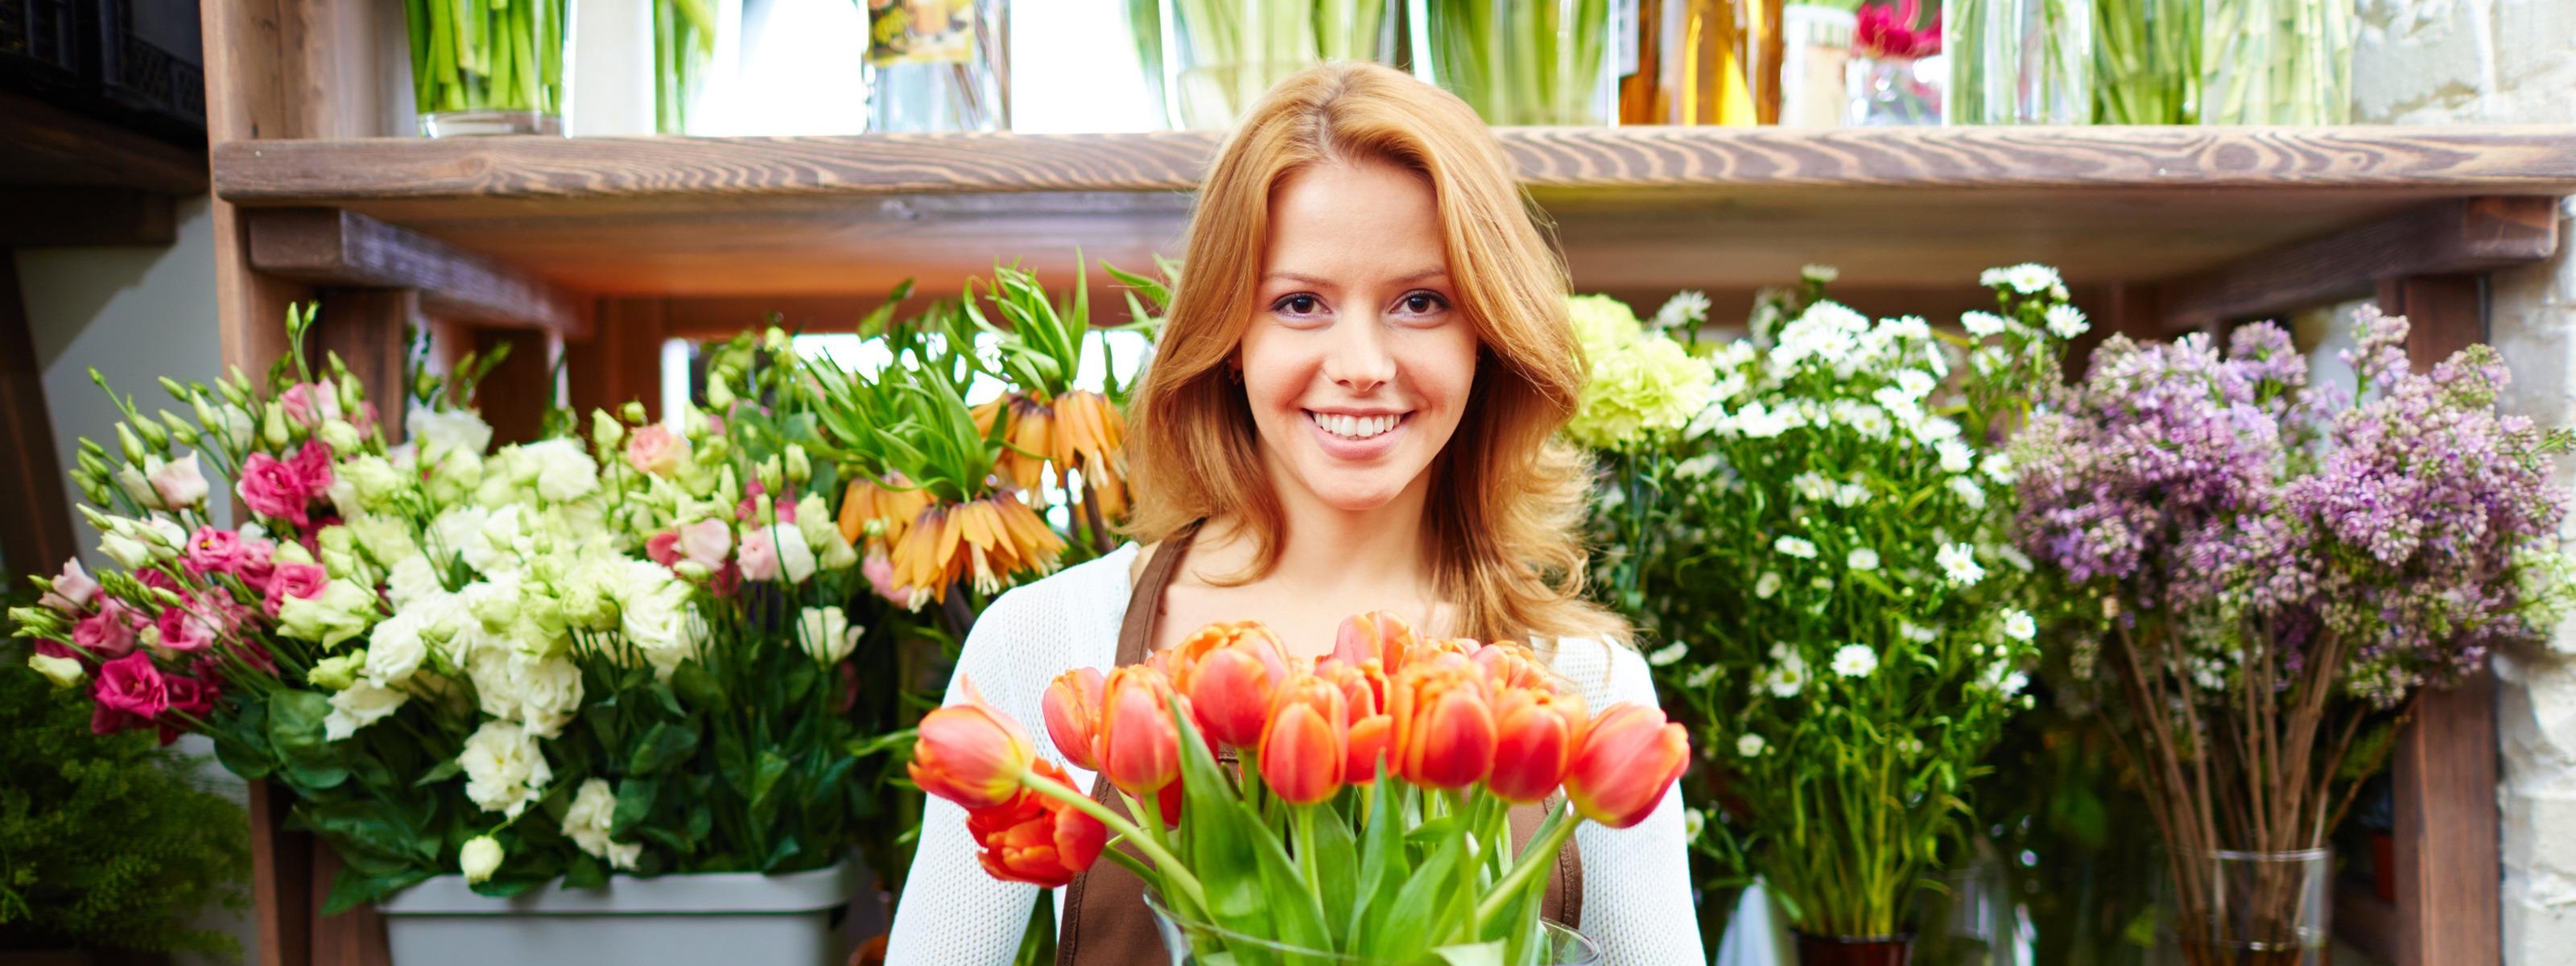 Lächelnde Person mit Schürze hält Vase mit orangen Tulpen in Händen vor Regal mit verschiedenen Schnittblumen stehend